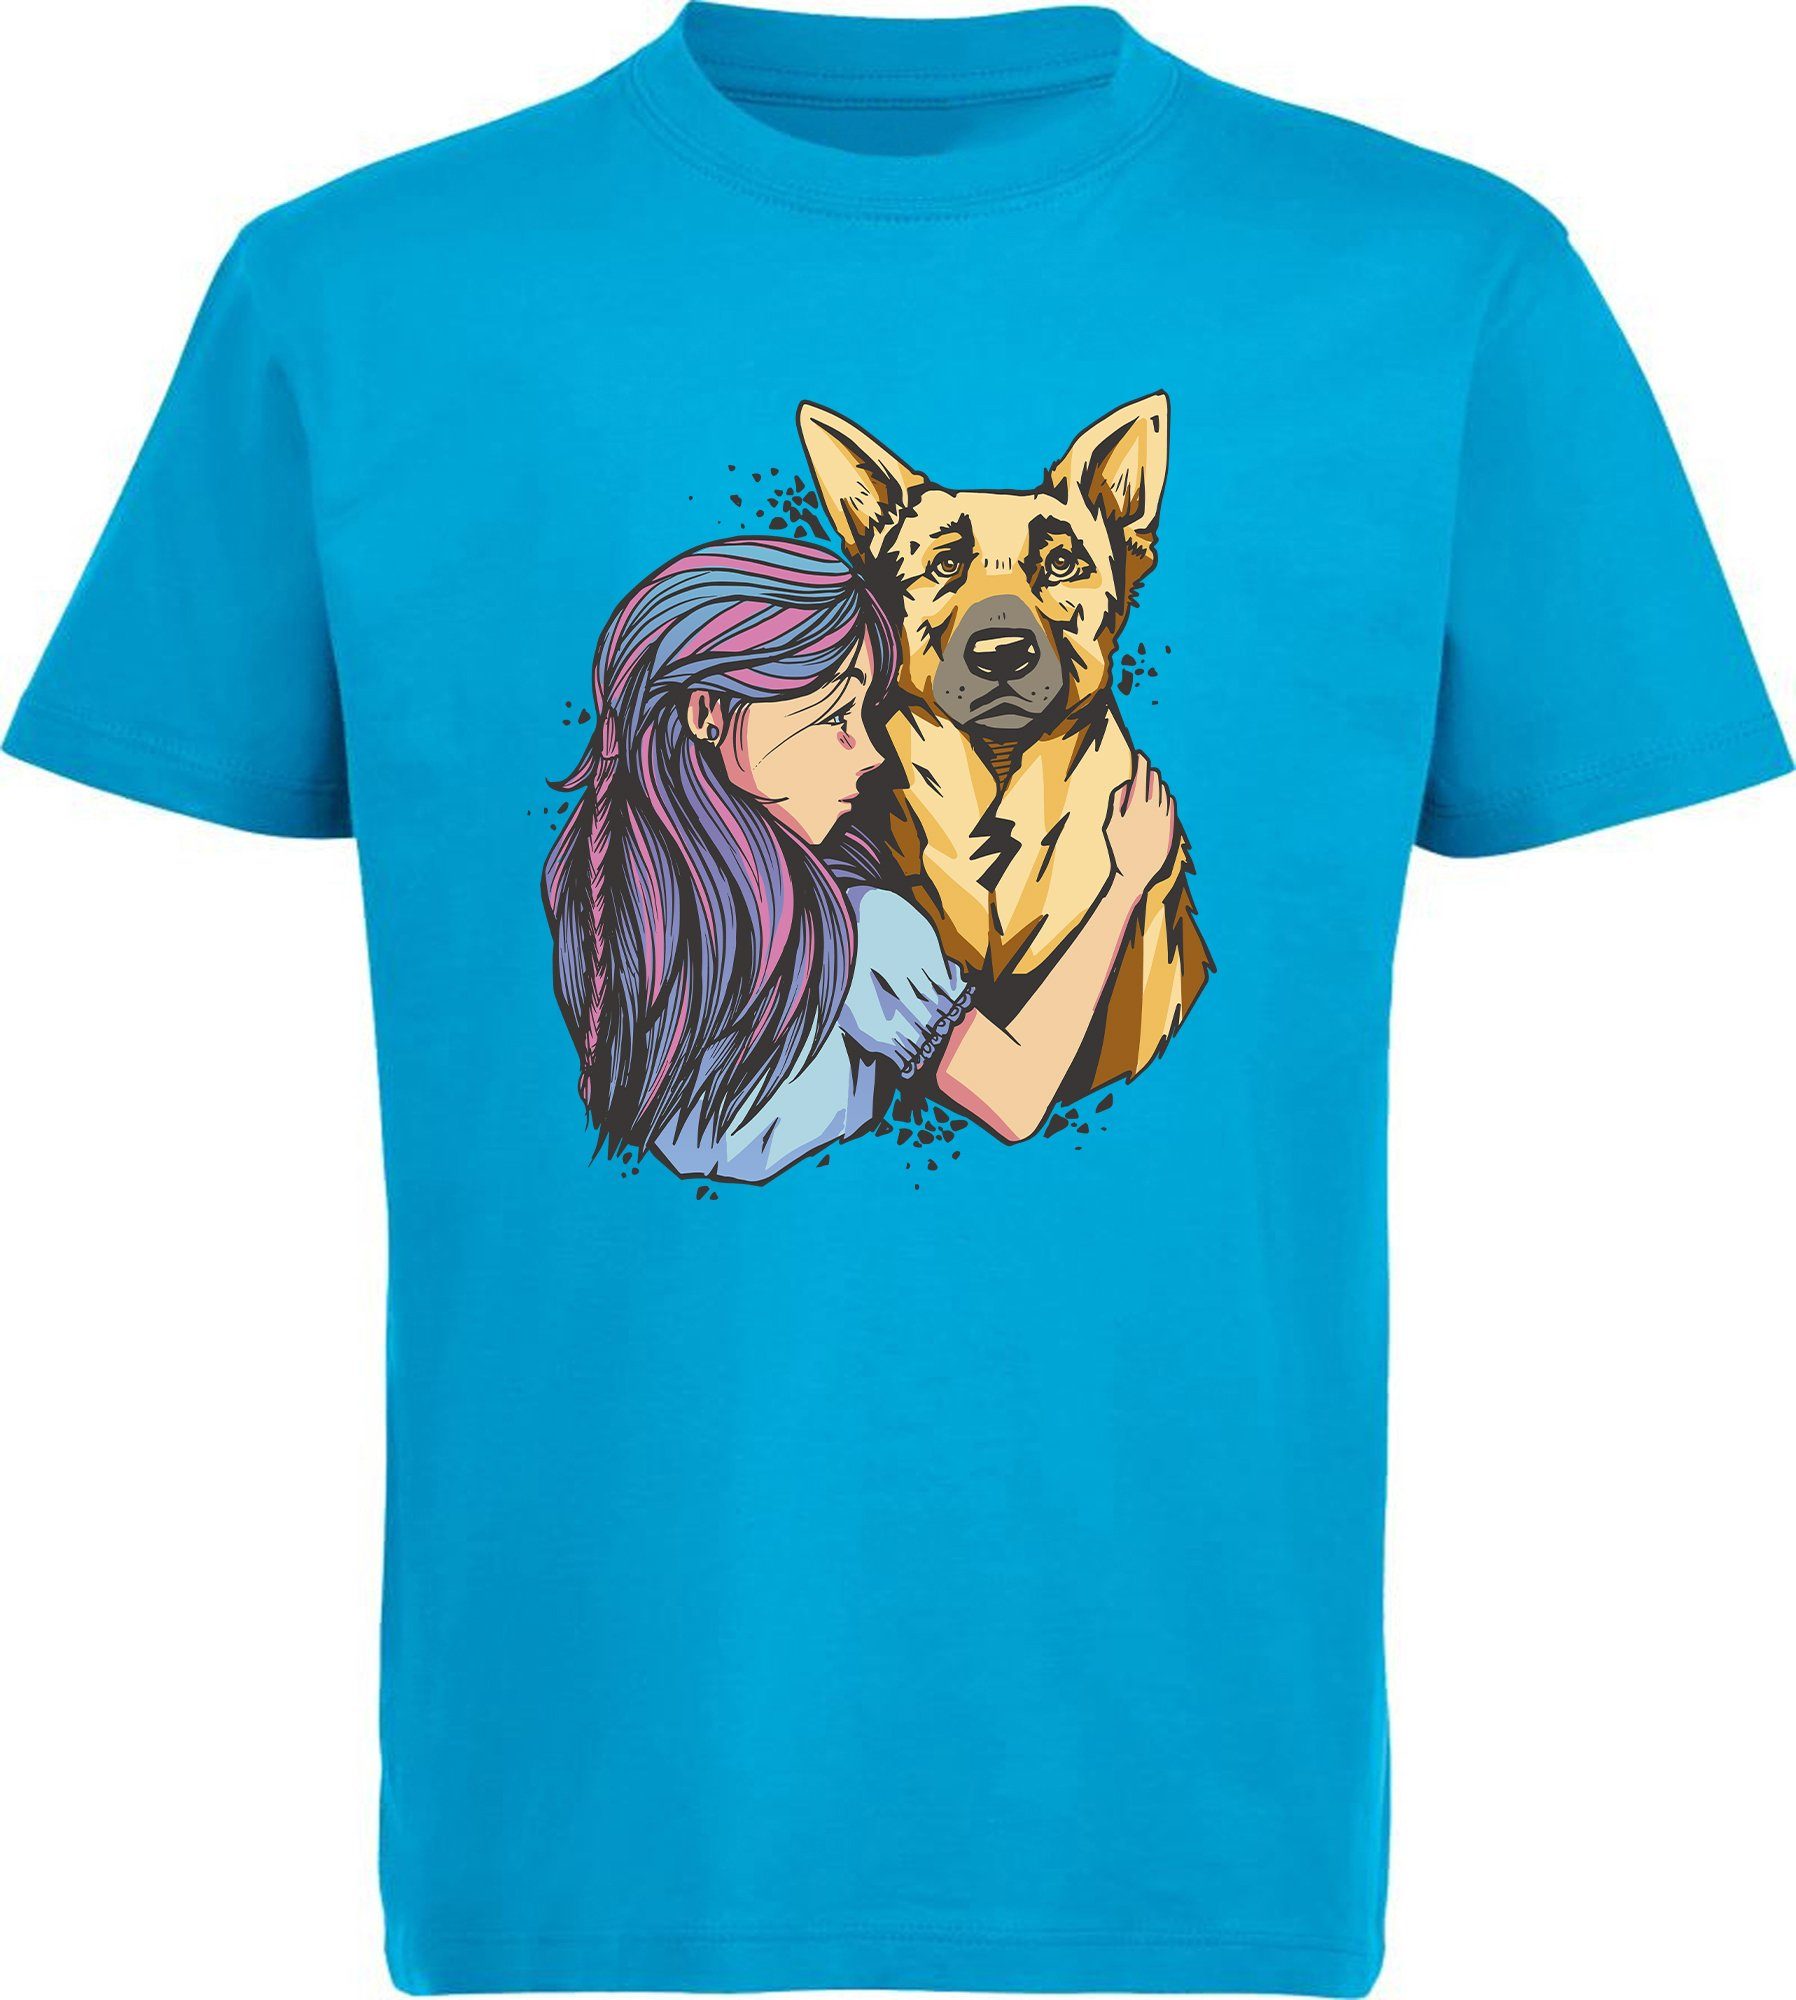 MyDesign24 T-Shirt Kinder Hunde Print Shirt bedruckt - Schäferhund mit Mädchen Baumwollshirt mit Aufdruck, i258 aqua blau | T-Shirts